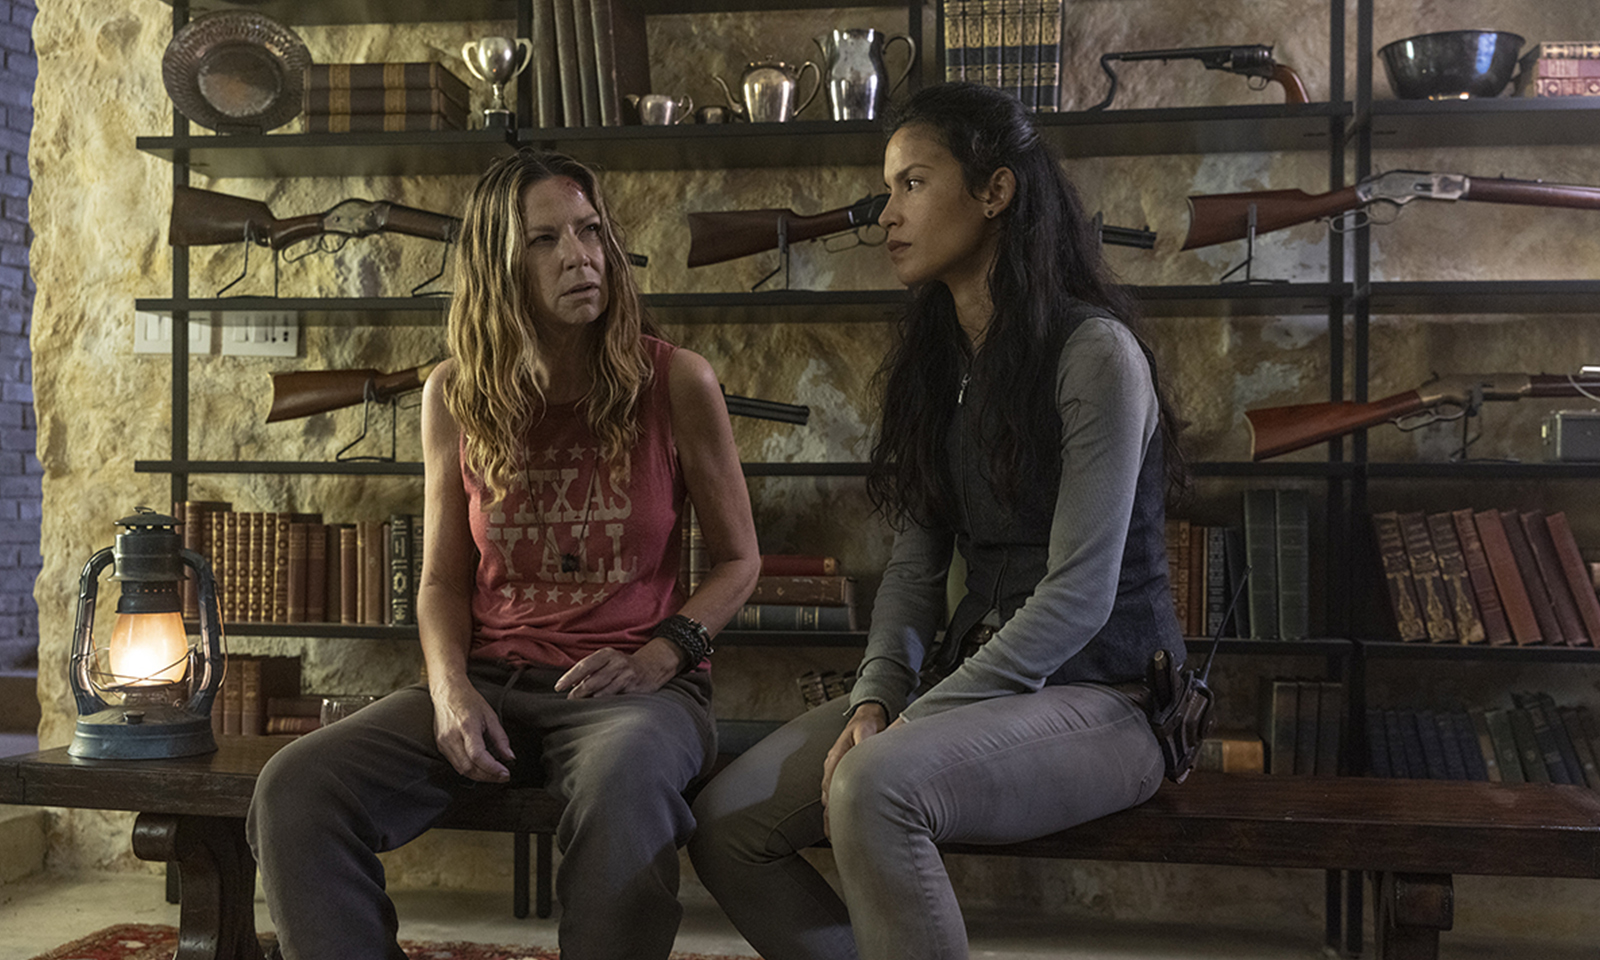 Sarah e Luciana conversando em um local cheio de armas no episódio 4 da 7ª temporada de Fear the Walking Dead.